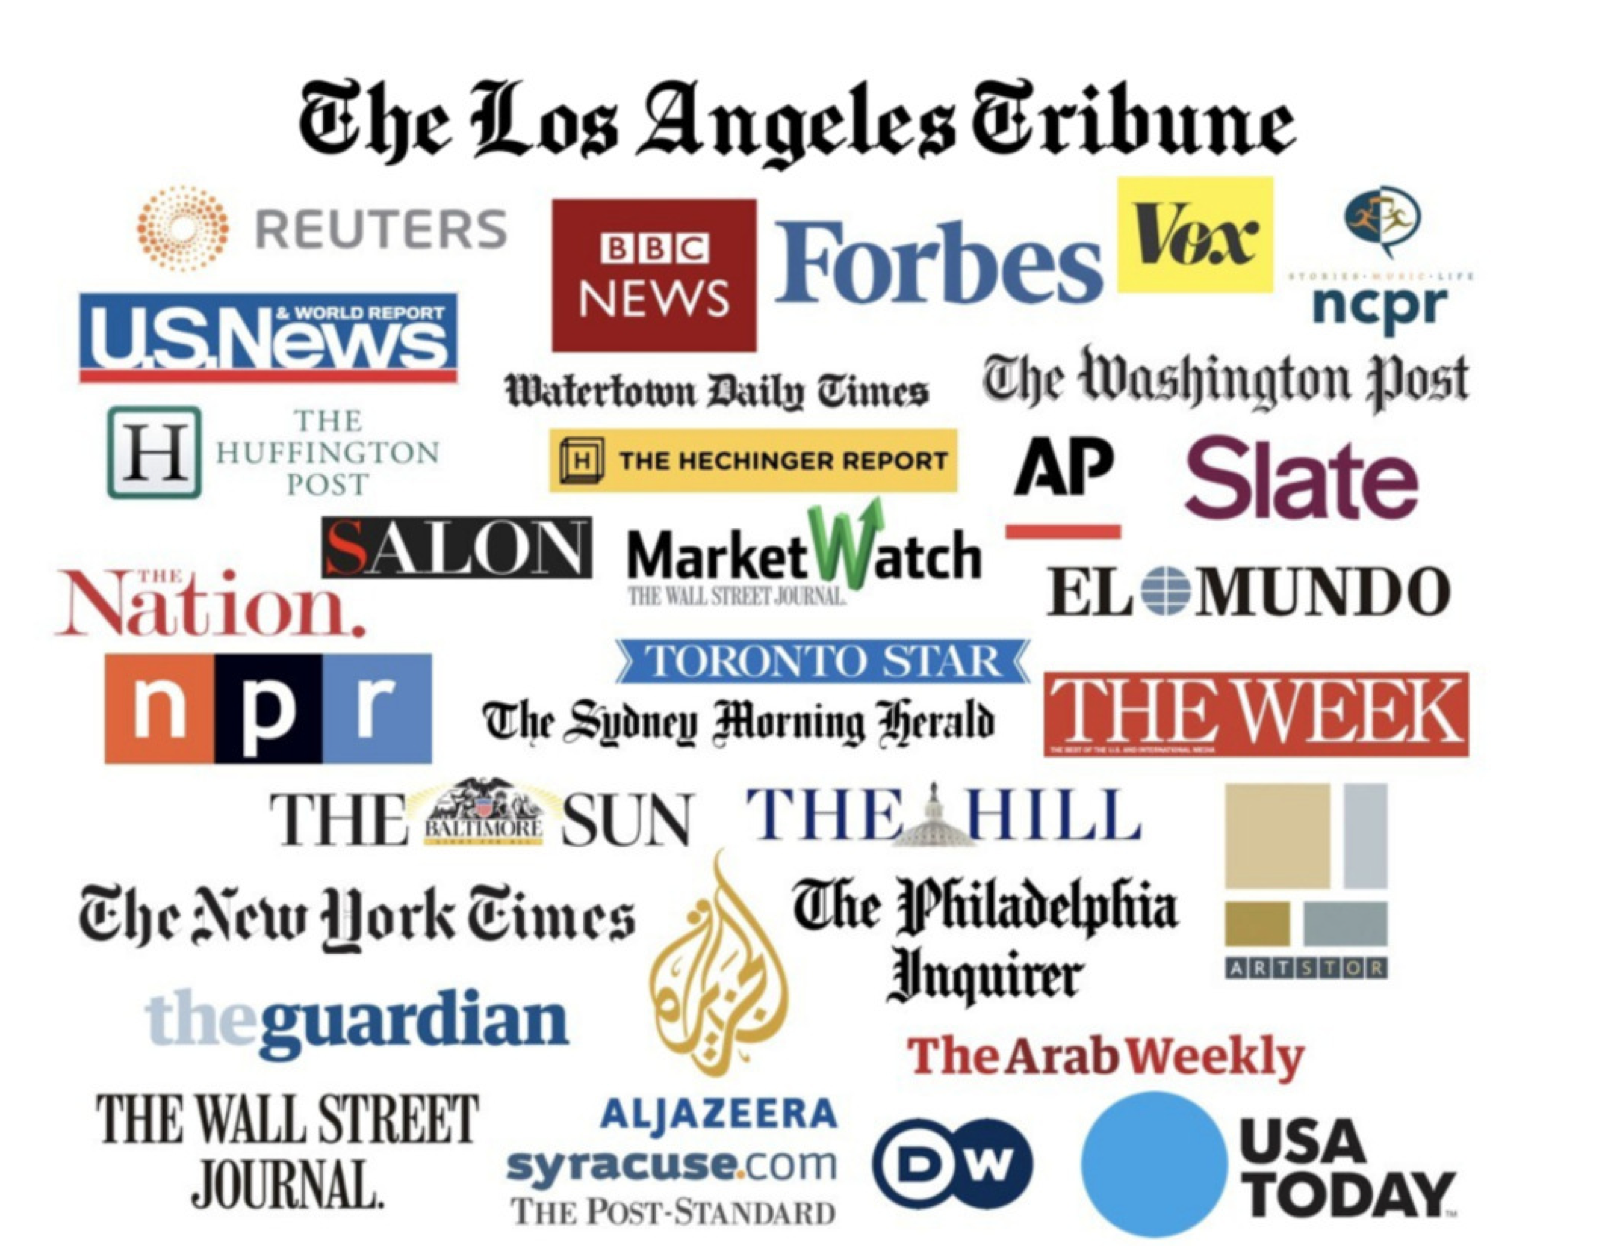 The Los Angeles Tribune